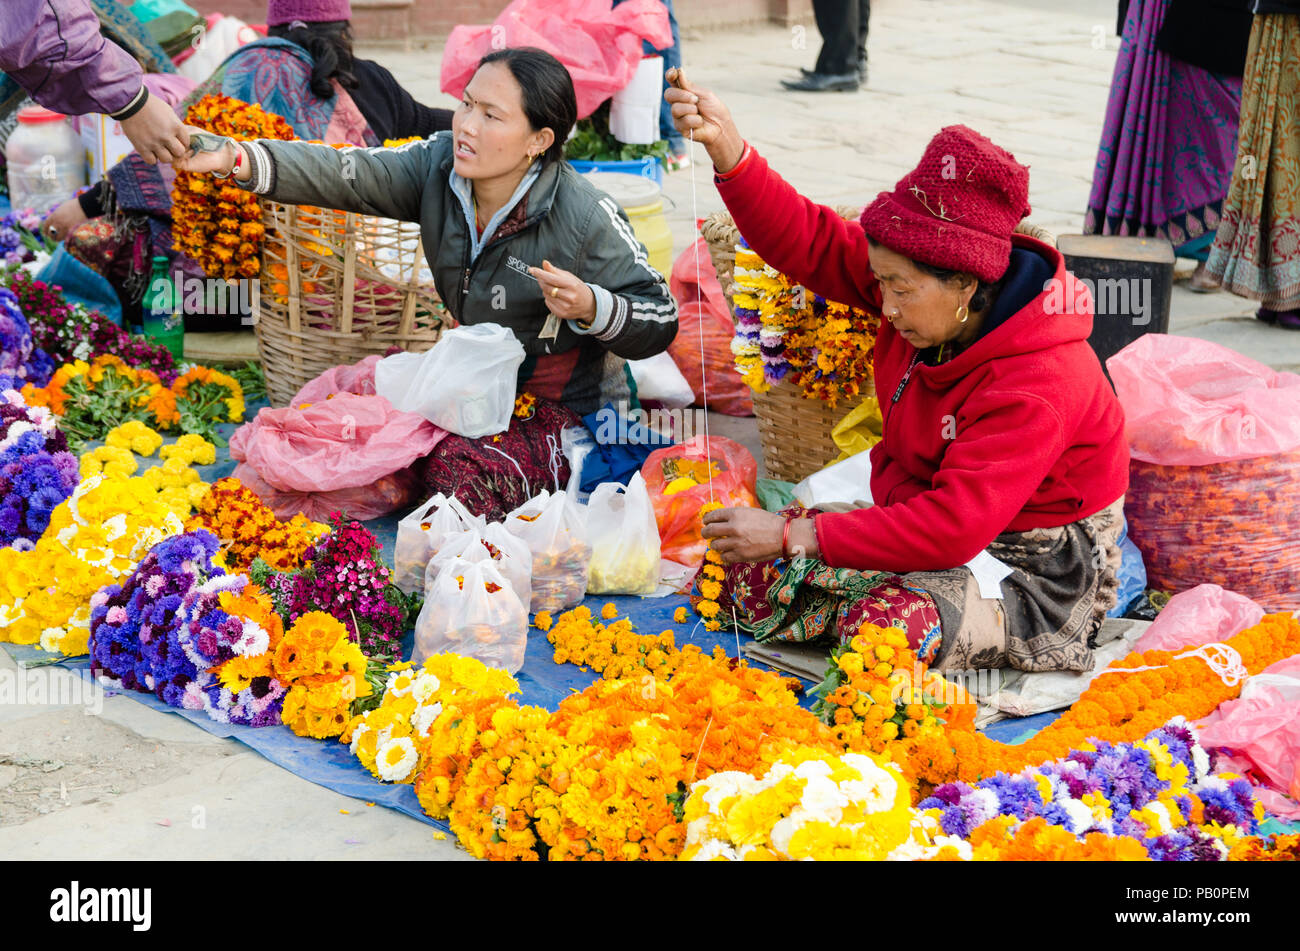 Las mujeres nepalesas locales para ofrecer la venta de flores en la base de las medidas conducentes a Swayambhunath o Monkey Temple, Katmandú, Nepal Foto de stock